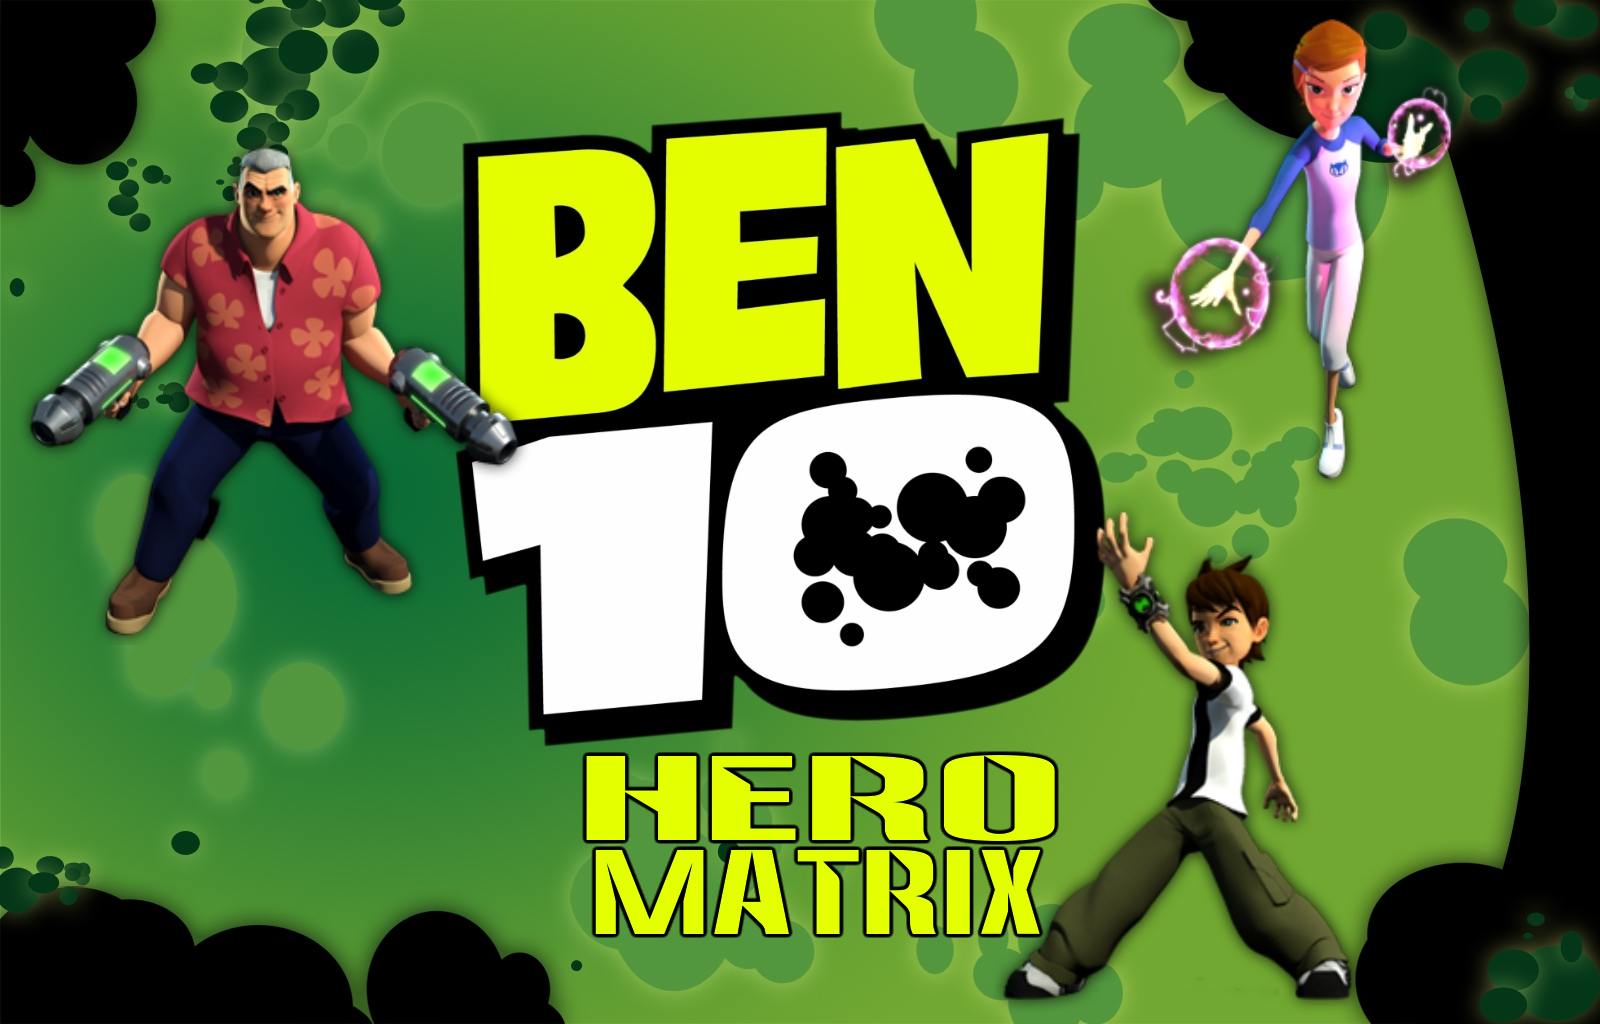 Ben 10 Burning Series